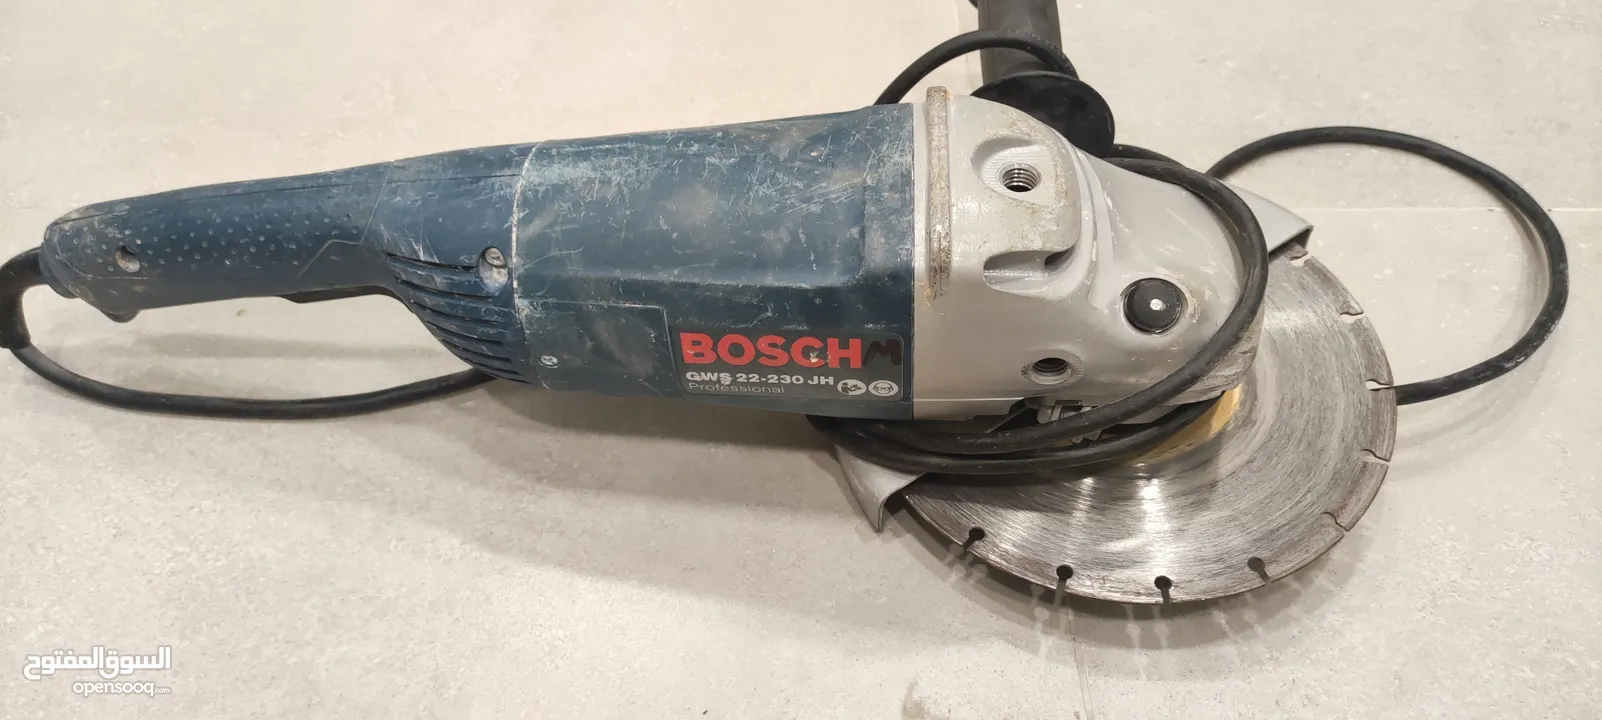 Bosch angle grinder 9" gws 22-230